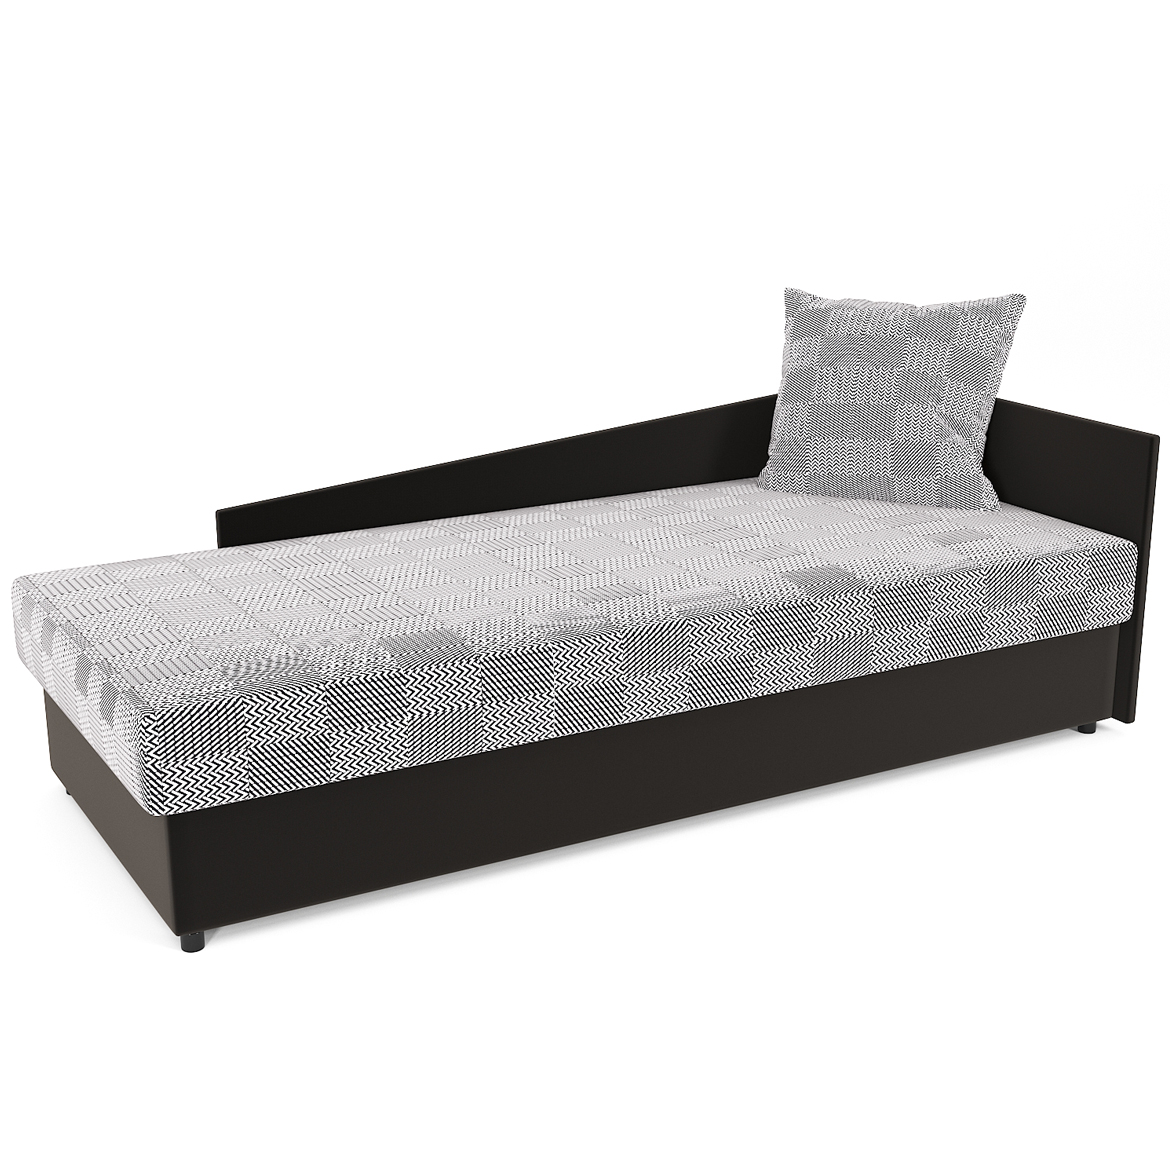 Krevet Jacek sa desnim prostorom za odlaganje 84x205x63 sivi